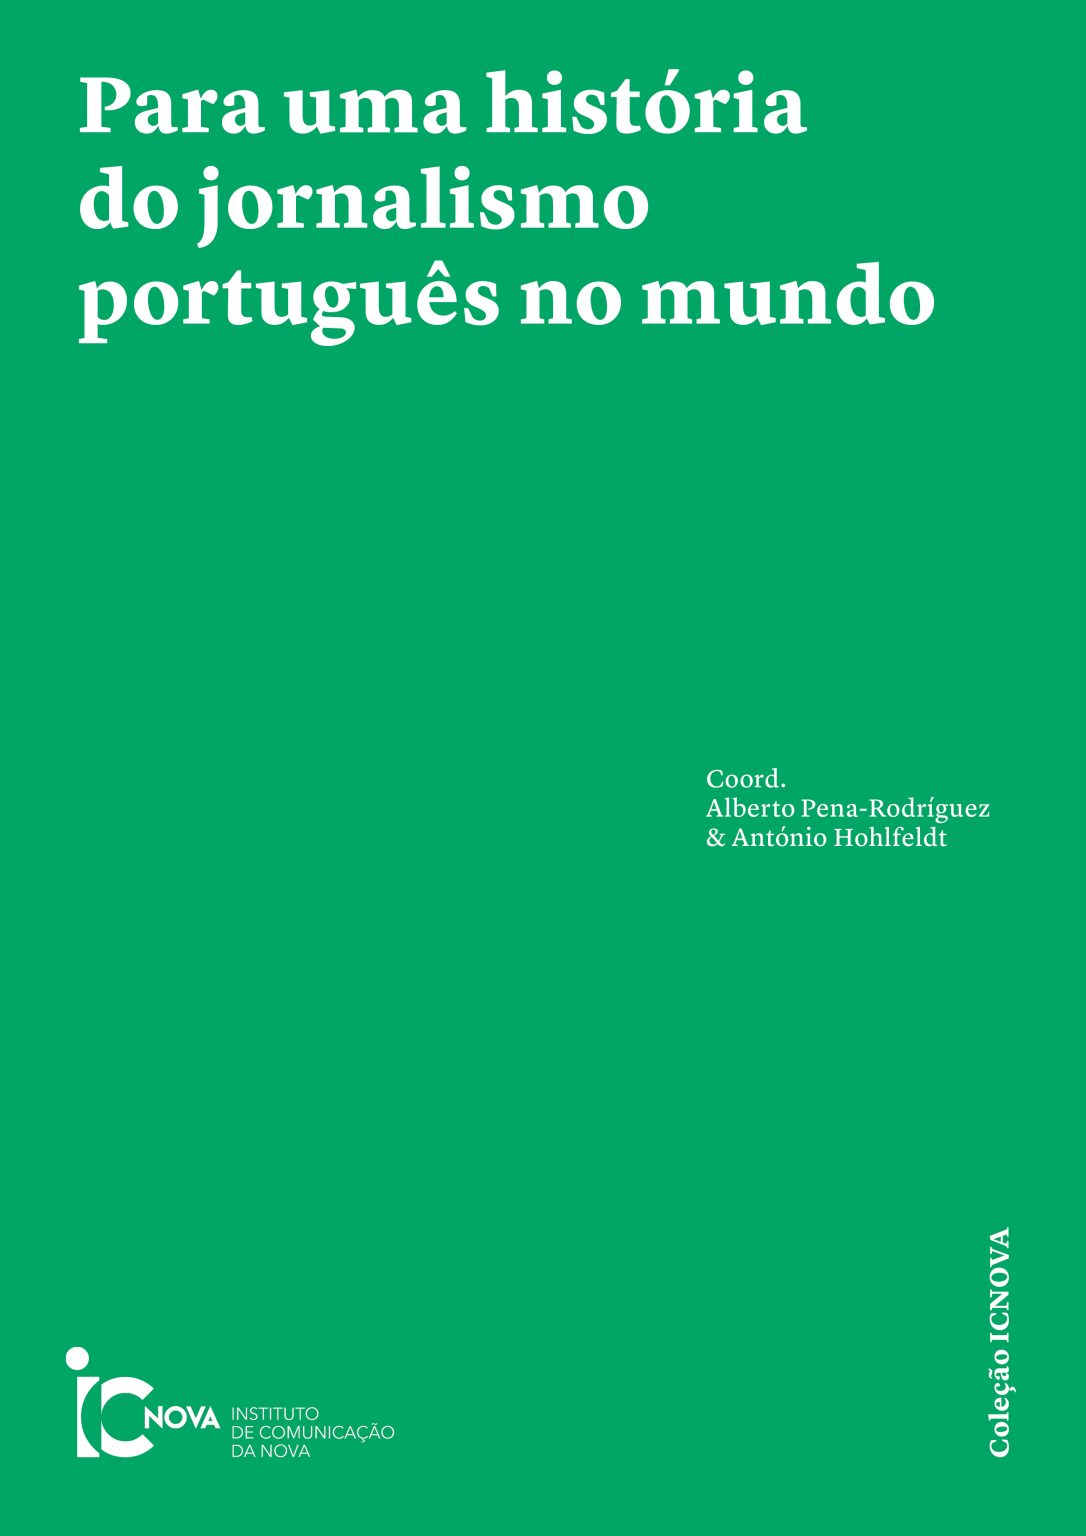 Publicação de novo ebook do ICNOVA “Para uma história do jornalismo português no mundo”